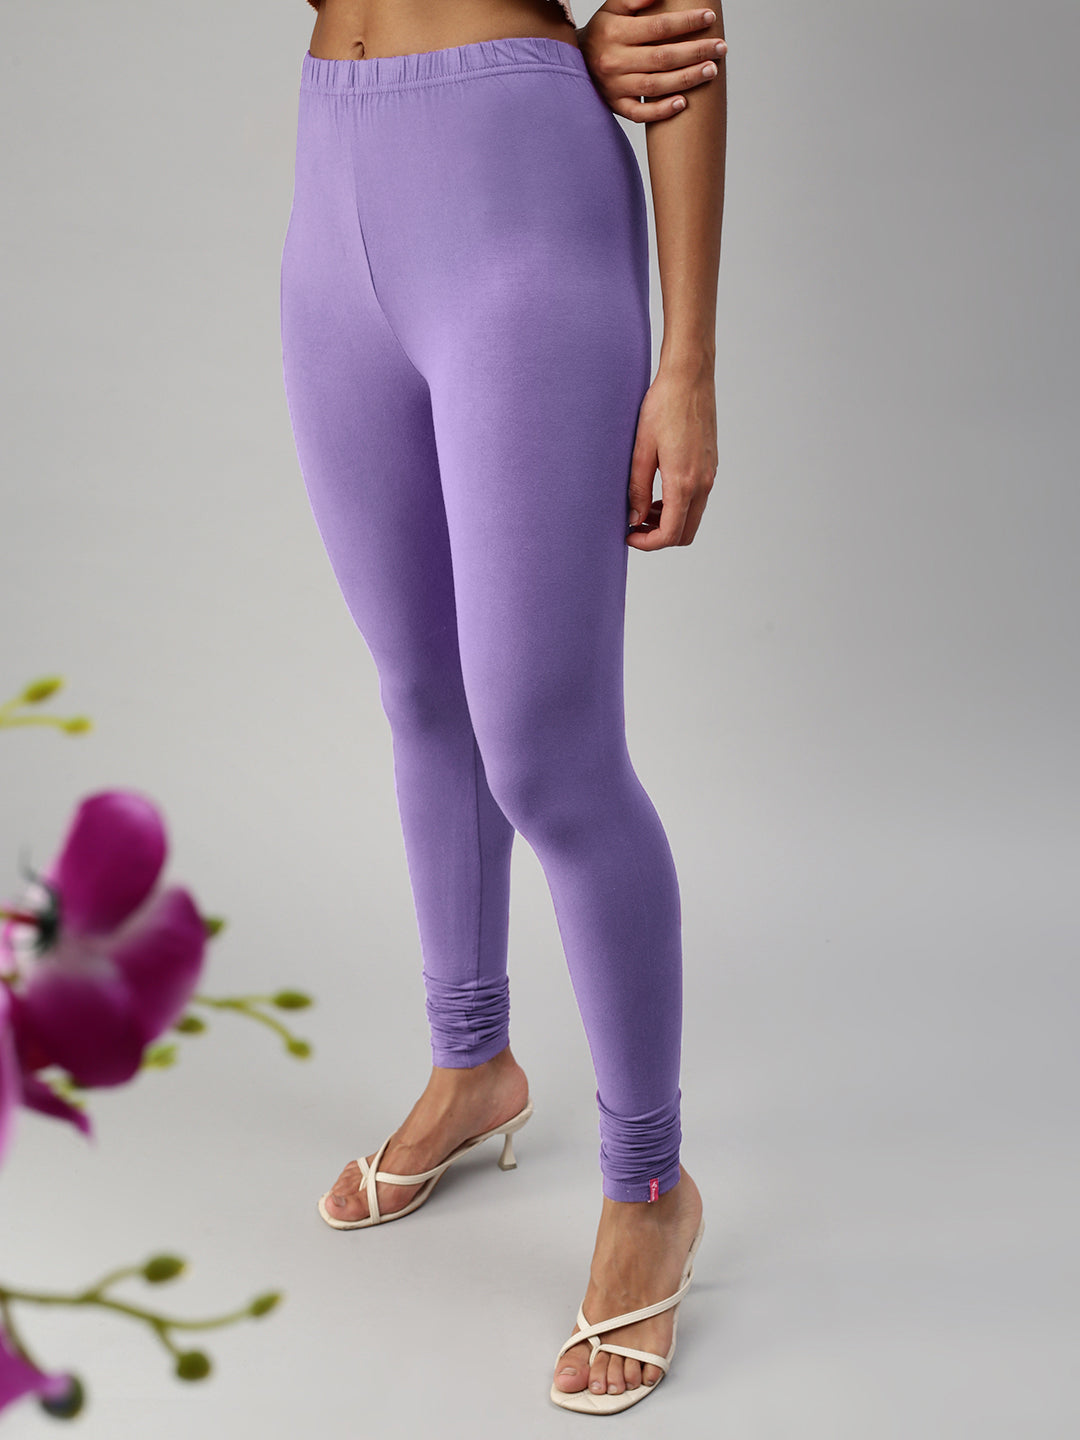 Buy Dollar Missy Lavender Cotton Leggings for Women Online @ Tata CLiQ